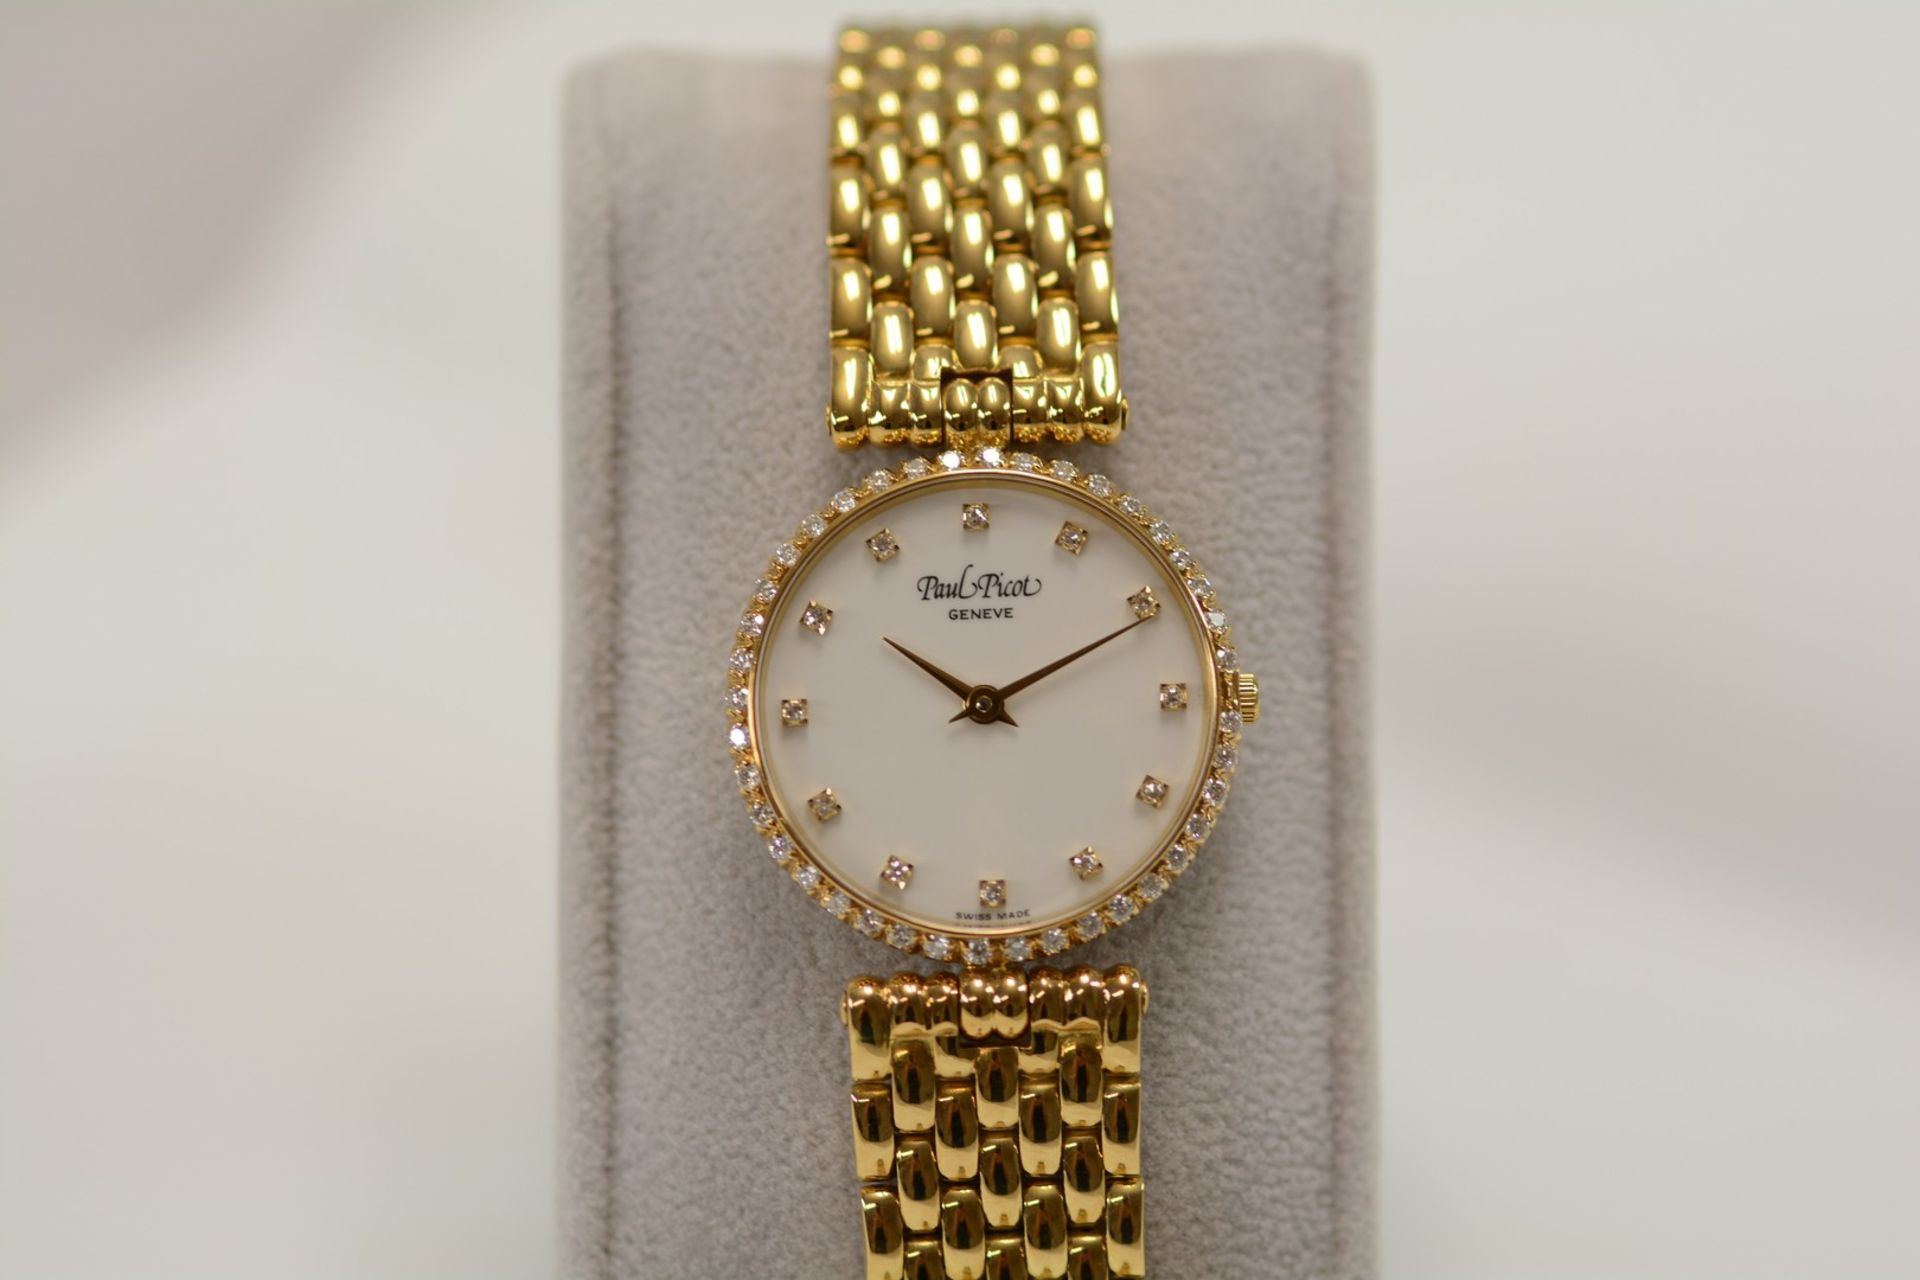 Paul Picot / Diamond - Lady's Yellow gold Wrist Watch - Image 3 of 11